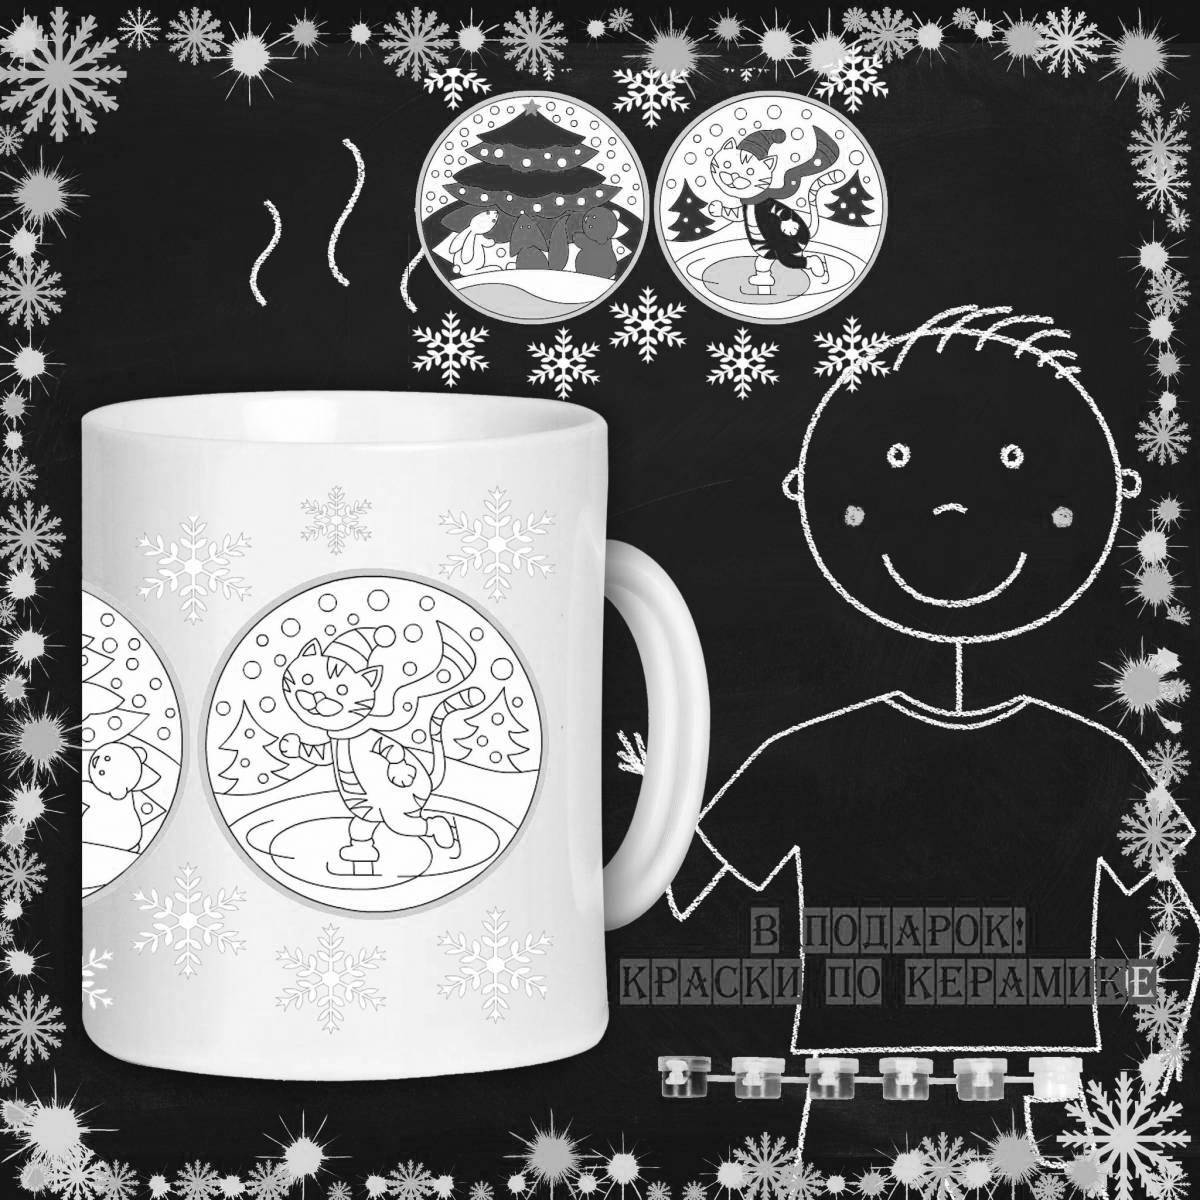 Sparkling Christmas mug coloring page